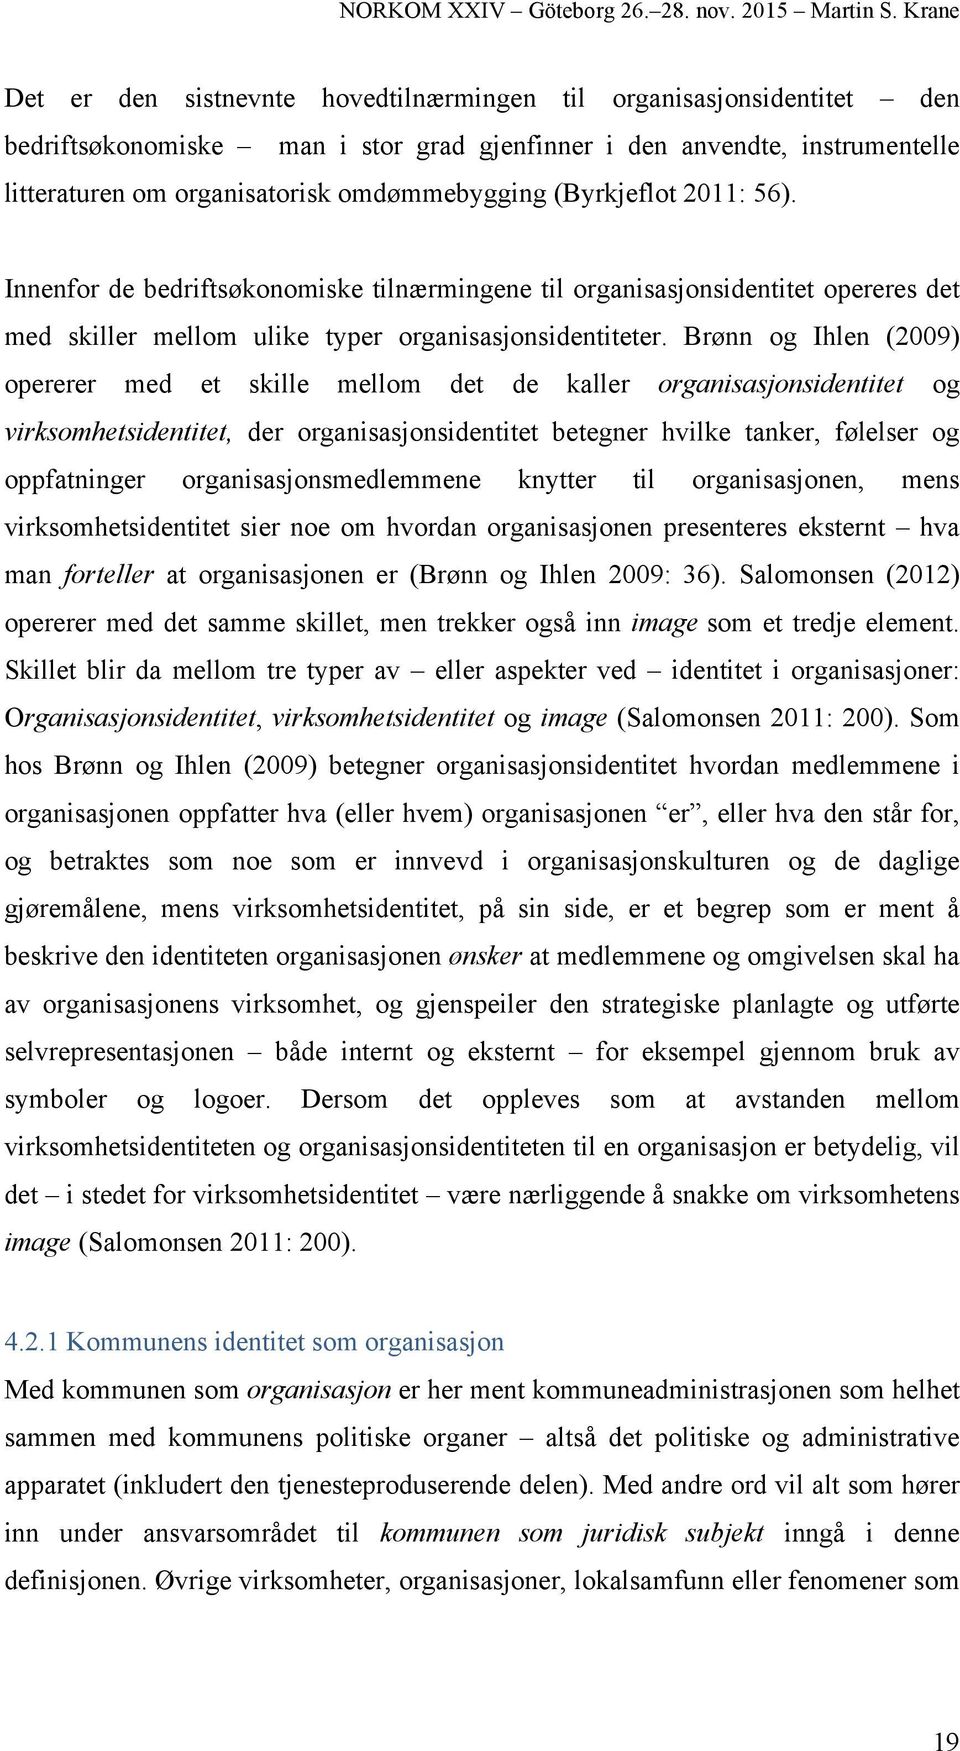 Brønn og Ihlen (2009) opererer med et skille mellom det de kaller organisasjonsidentitet og virksomhetsidentitet, der organisasjonsidentitet betegner hvilke tanker, følelser og oppfatninger